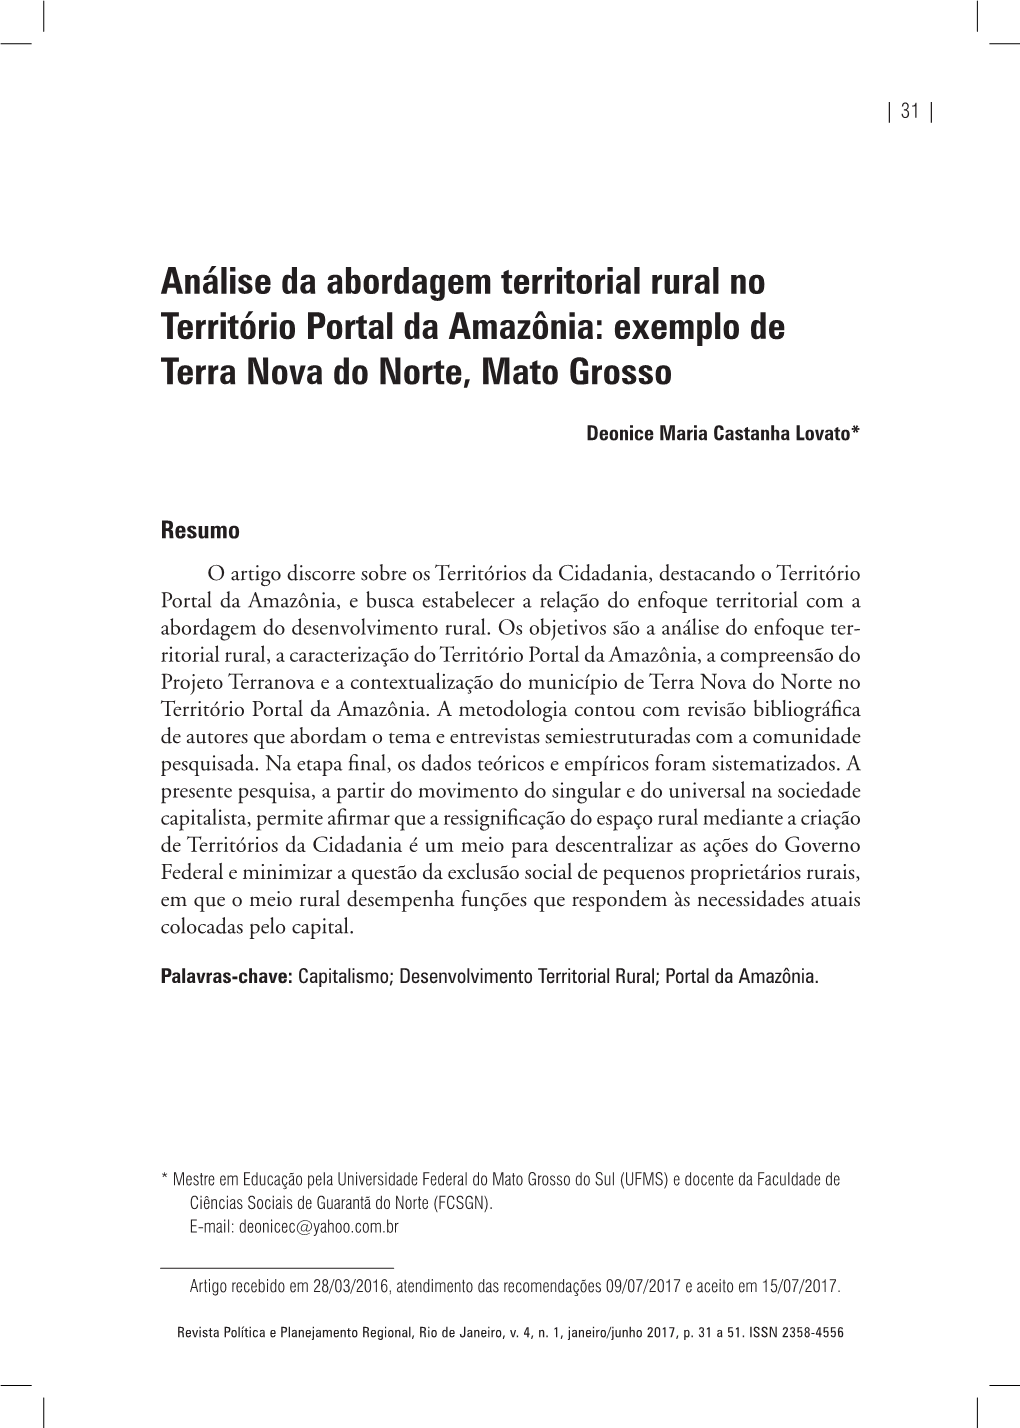 Análise Da Abordagem Territorial Rural No Território Portal Da Amazônia: Exemplo De Terra Nova Do Norte, Mato Grosso